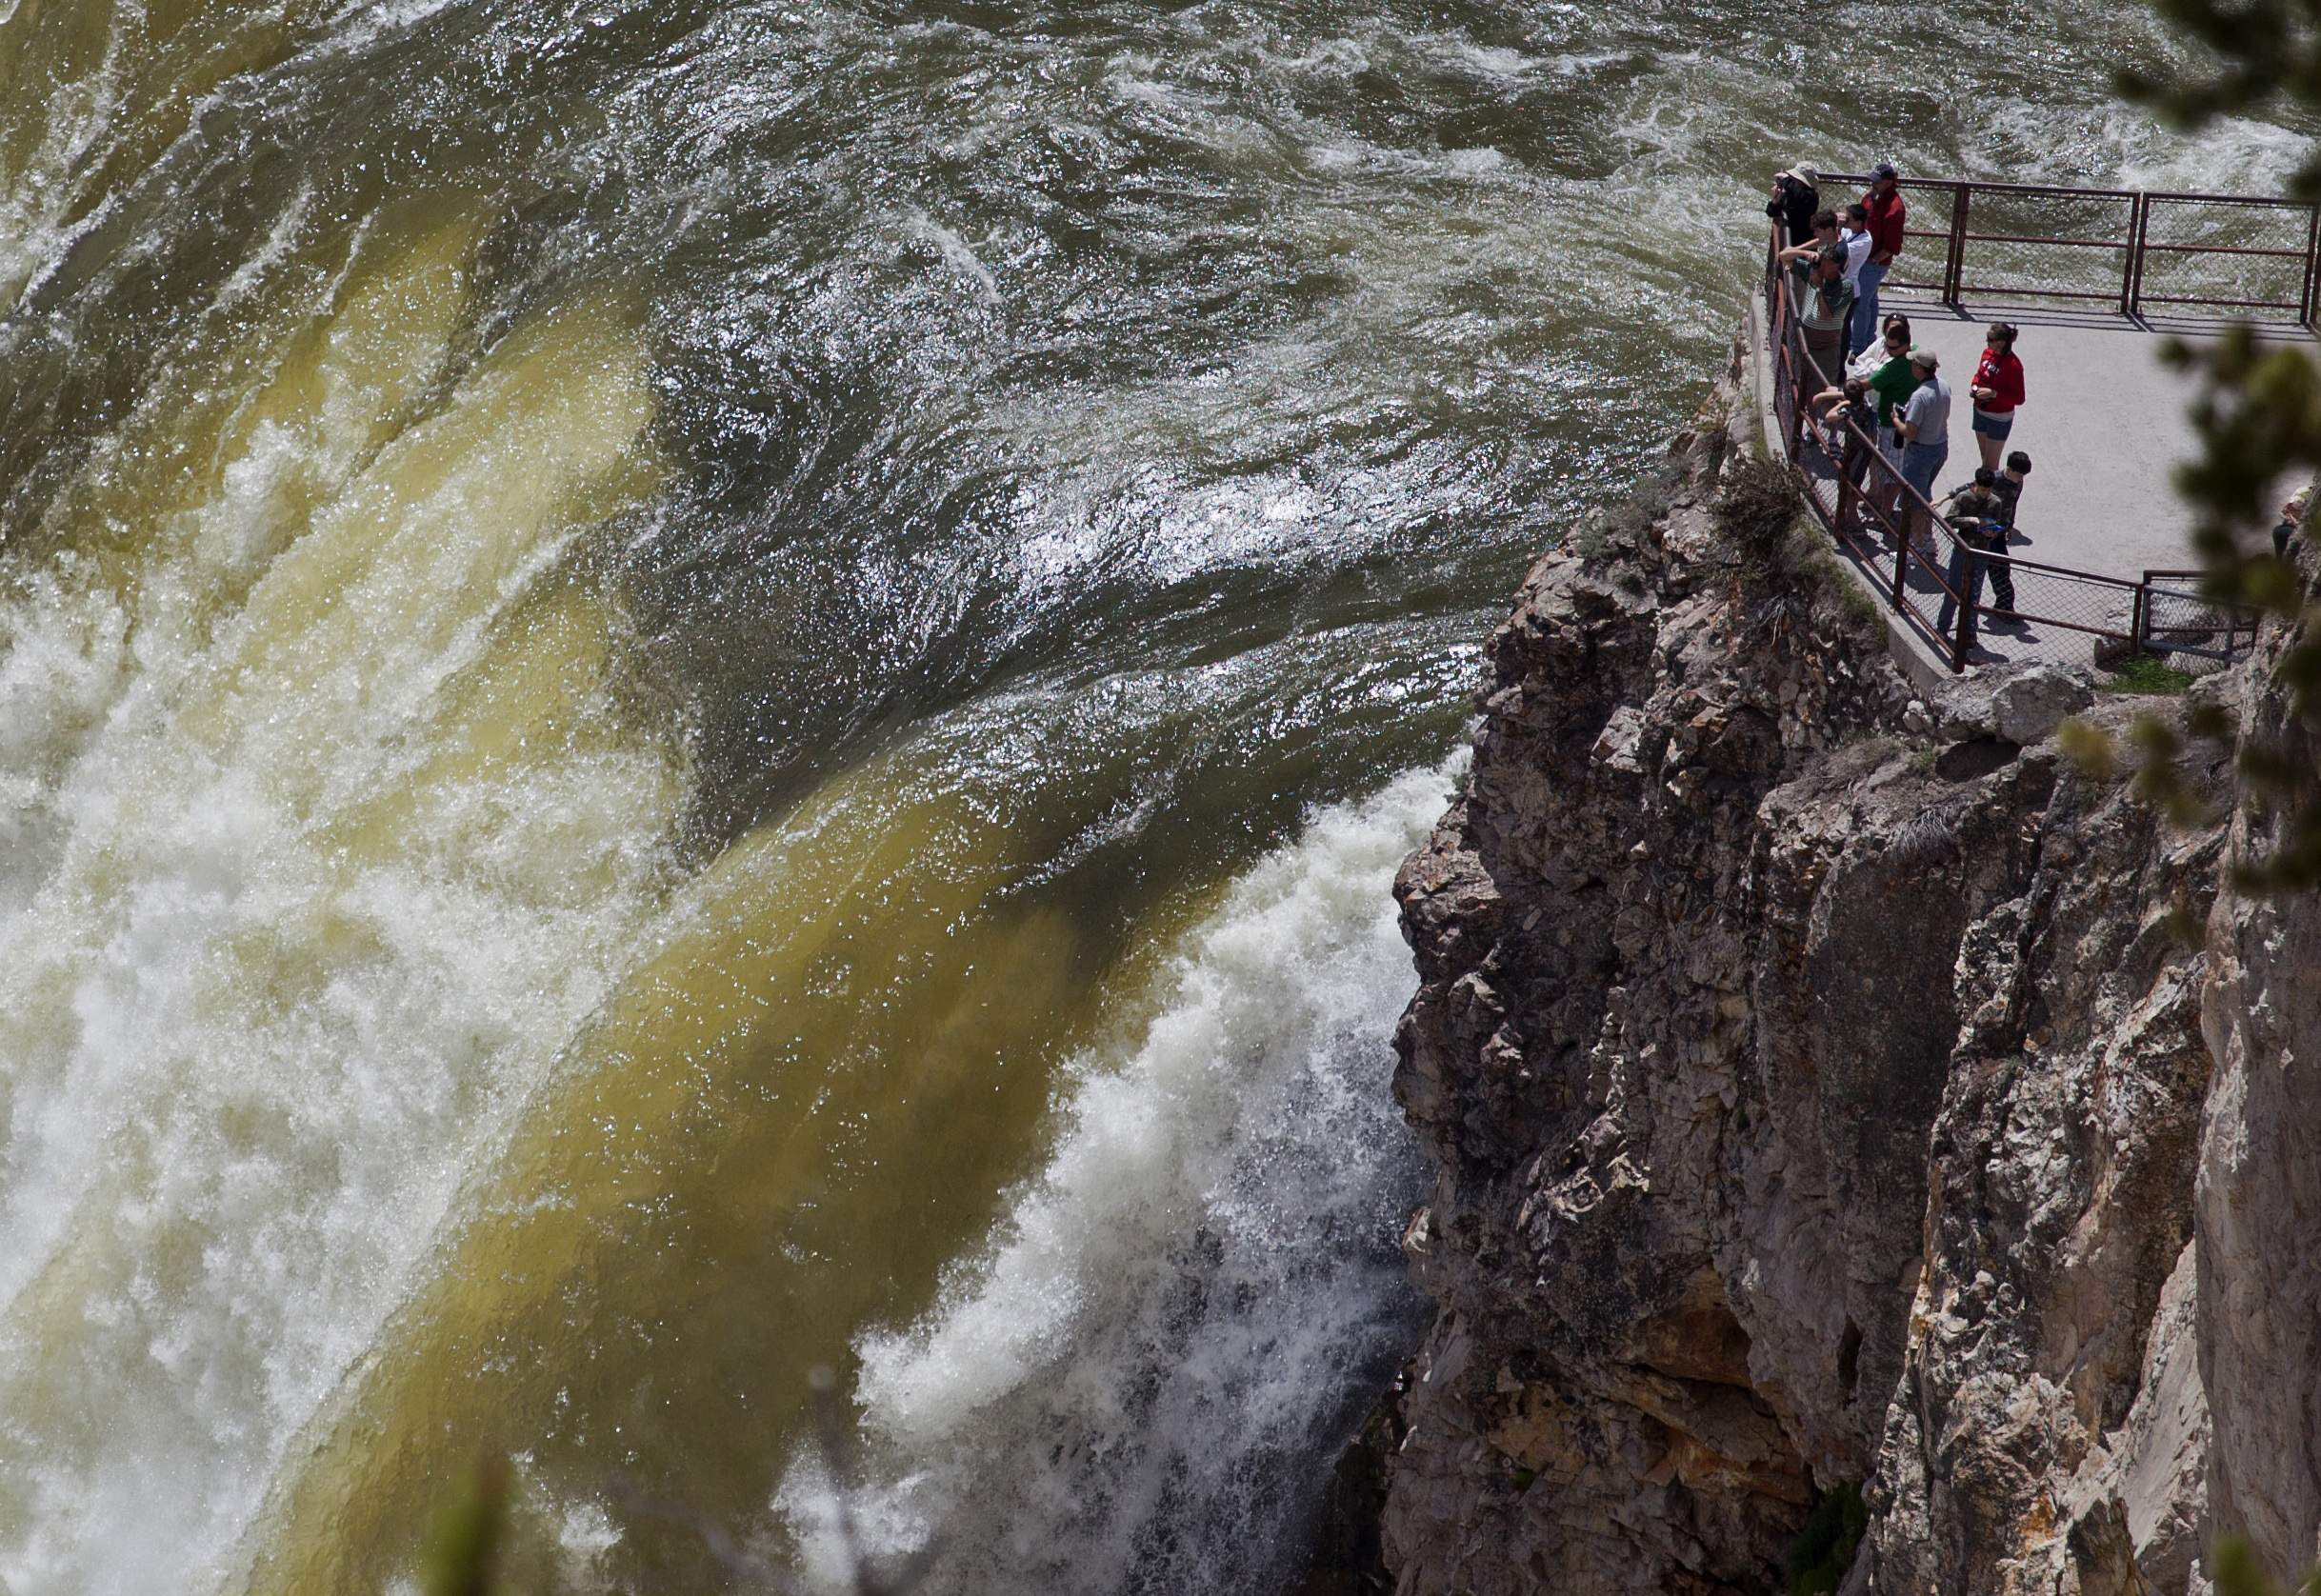 ΗΠΑ: Πετρελαιοκηλίδα μήκους 40 χλμ. στον ποταμό Γέλοουστοουν της Μοντάνα